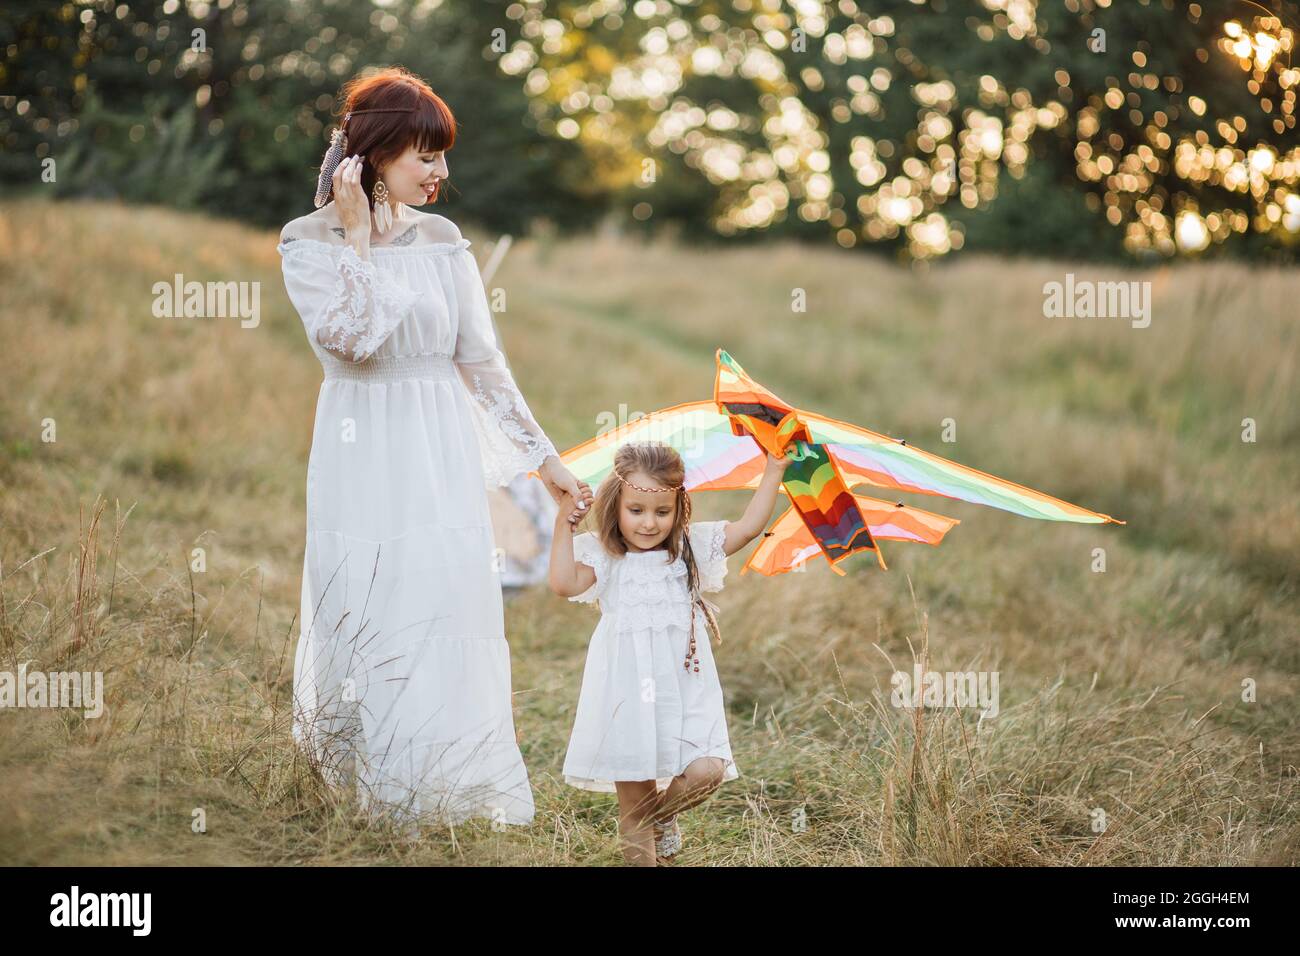 Glückliche Familie, Urlaub, Muttertagskonzept. Charmante Mutter und ihre niedliche, entzückende kleine Tochter, die bei Sonnenuntergang einen Drachen über die Natur startend. Boho Hippie Mama und Kind spielen mit Drachen auf dem Feld Stockfoto